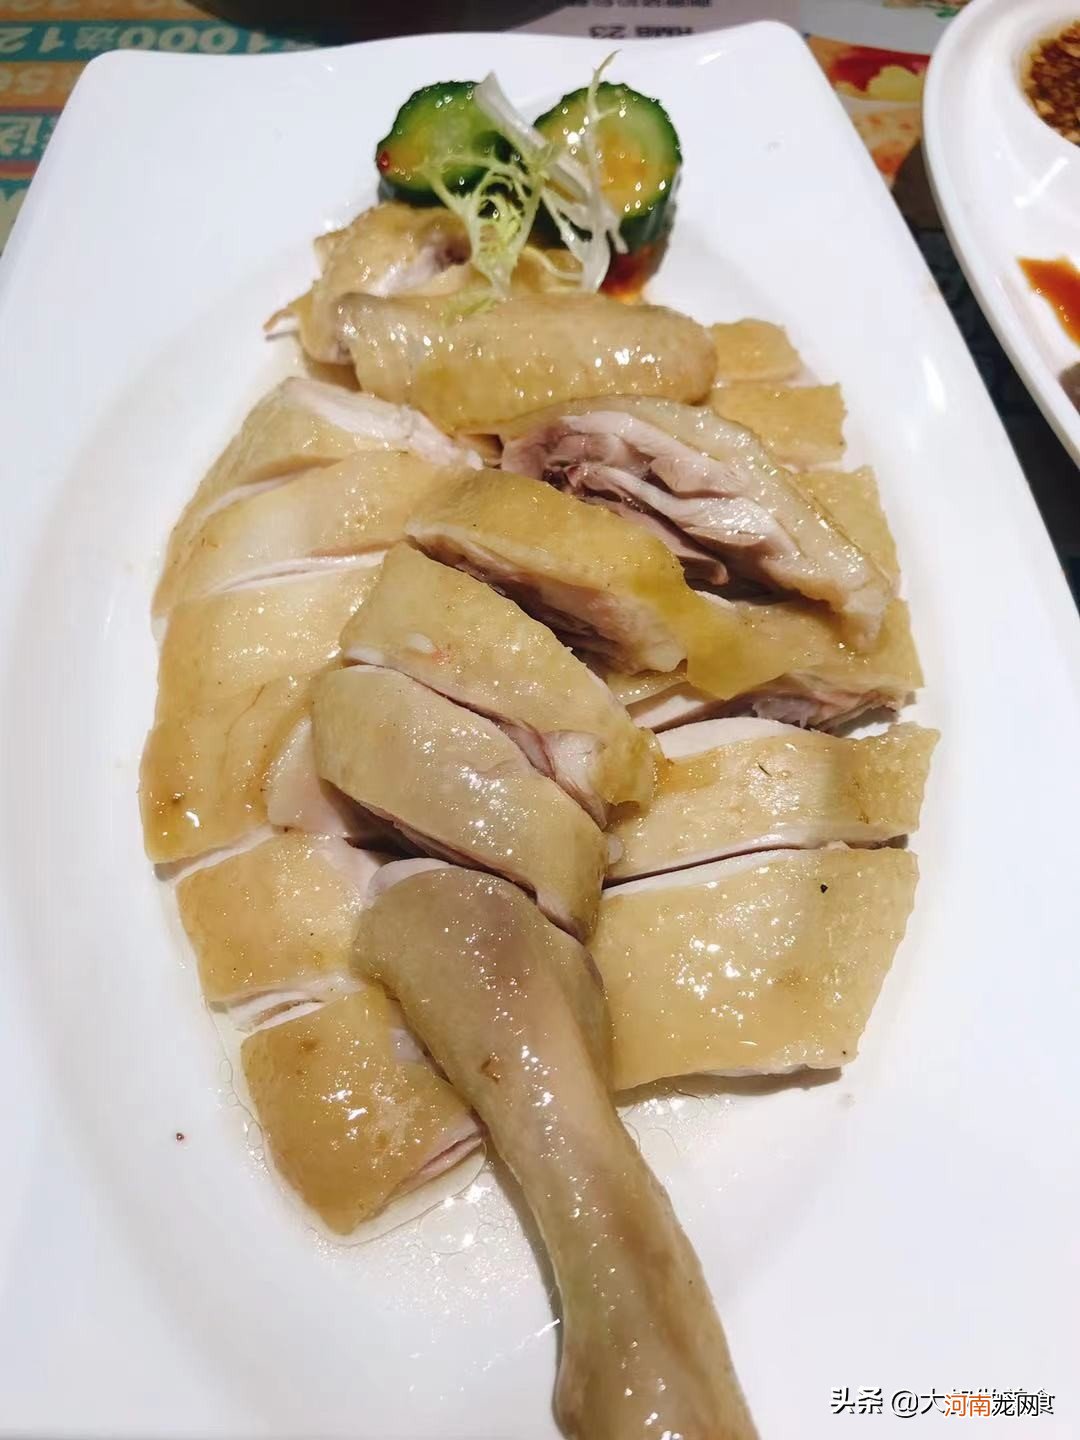 广东沙姜焗鸡的2种家常做法 沙姜鸡的做法窍门